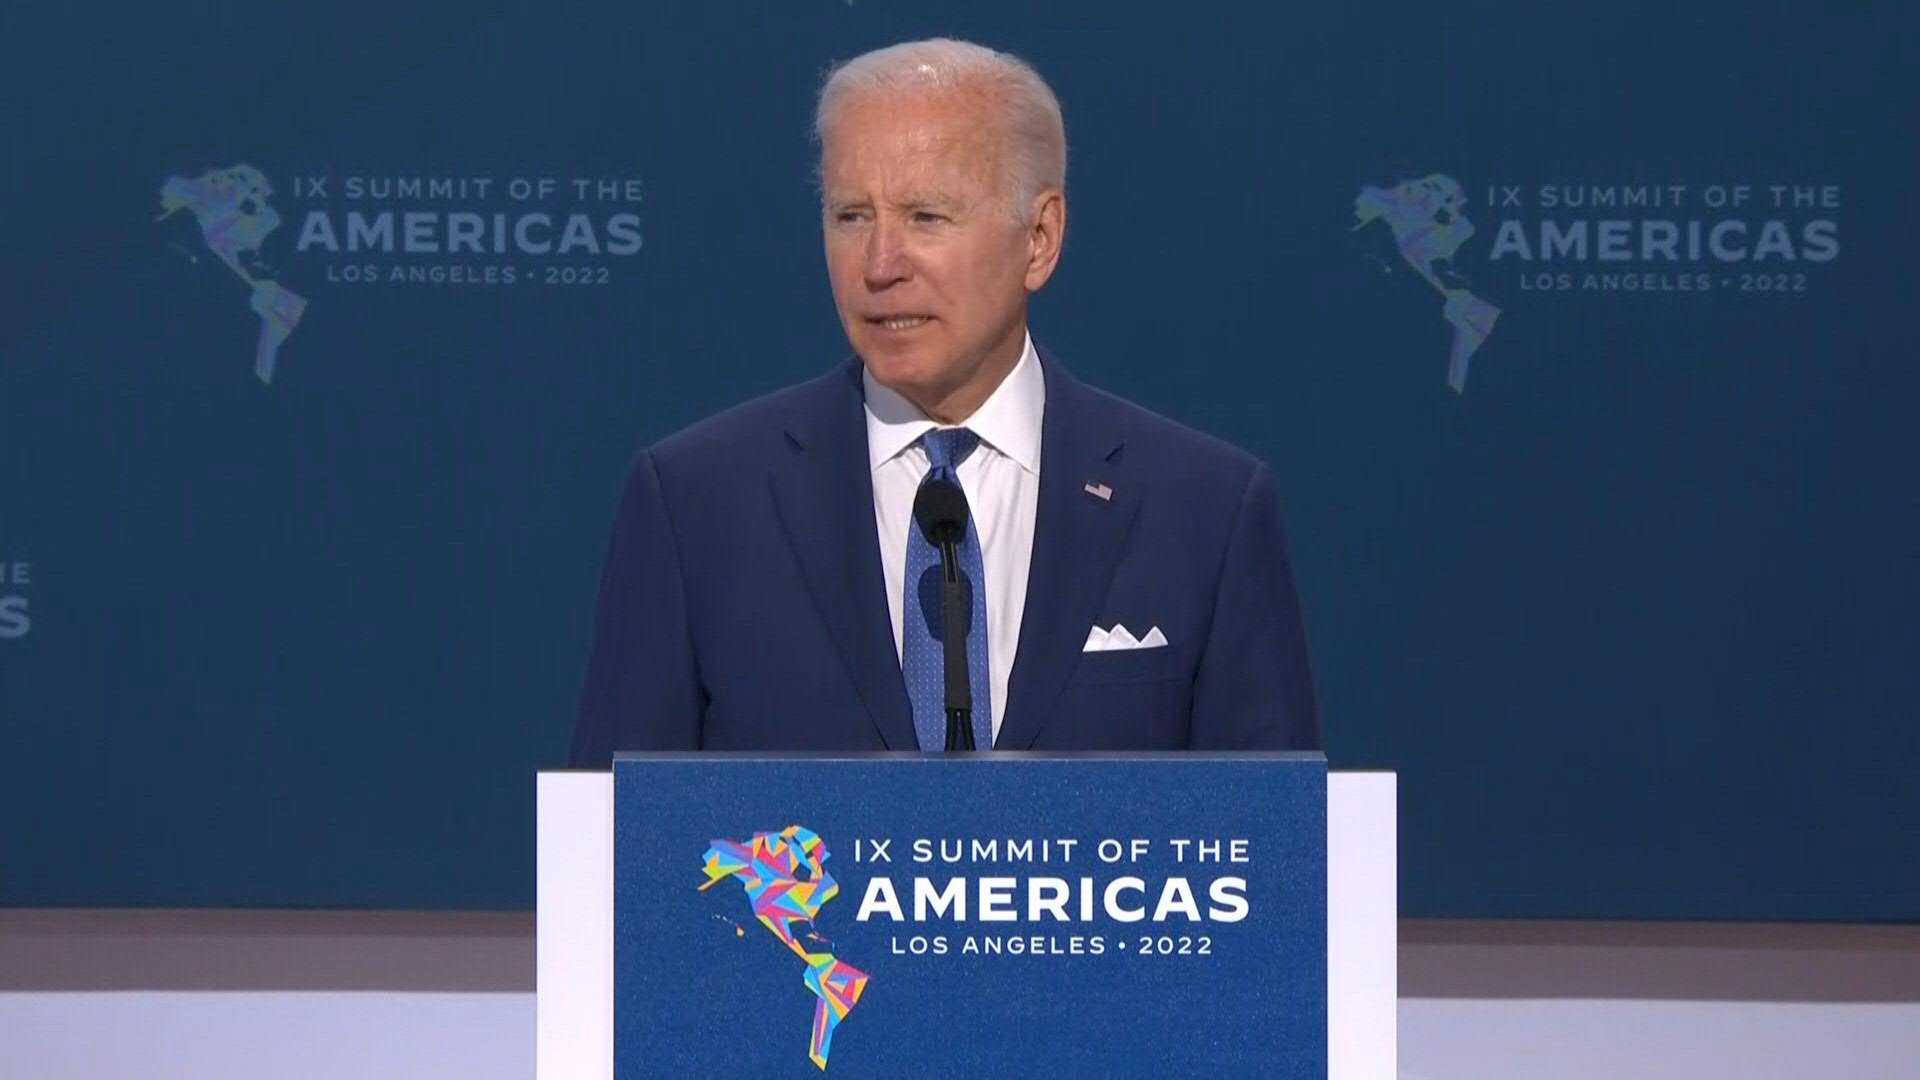 La postura de Joe Biden fue cuestionada nivel internacional después de que AMLO se negara a asistir a la Cumbre de las Américas (Foto: Archivo)